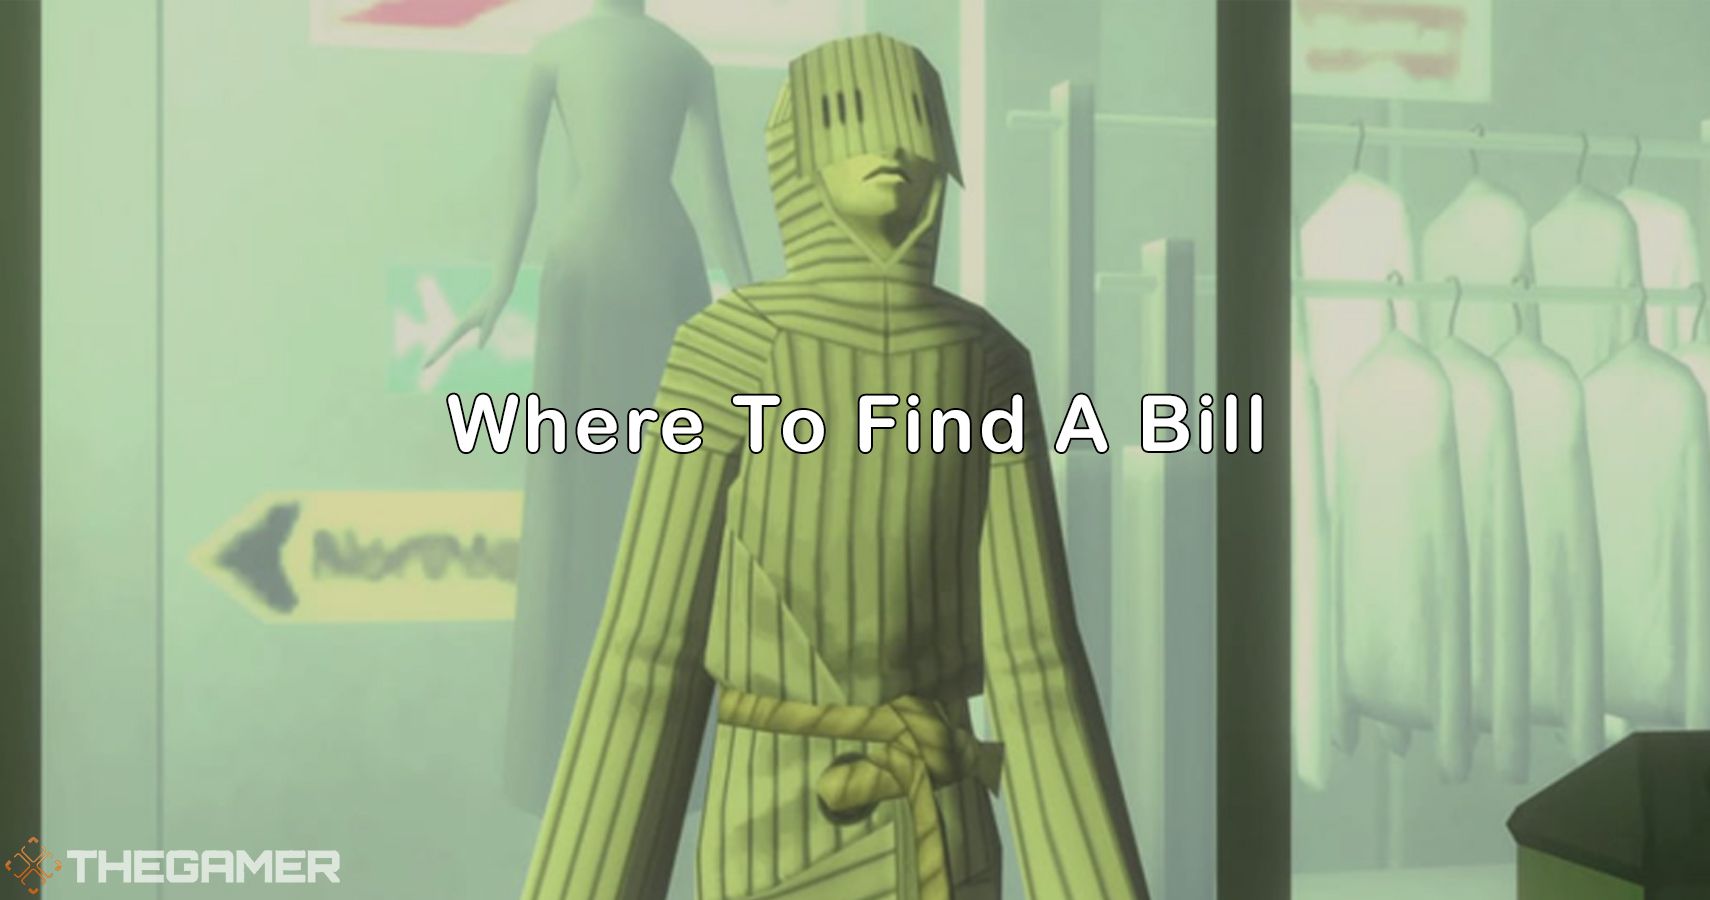 Shin Megami Tensei 3: Where To Find A Bill